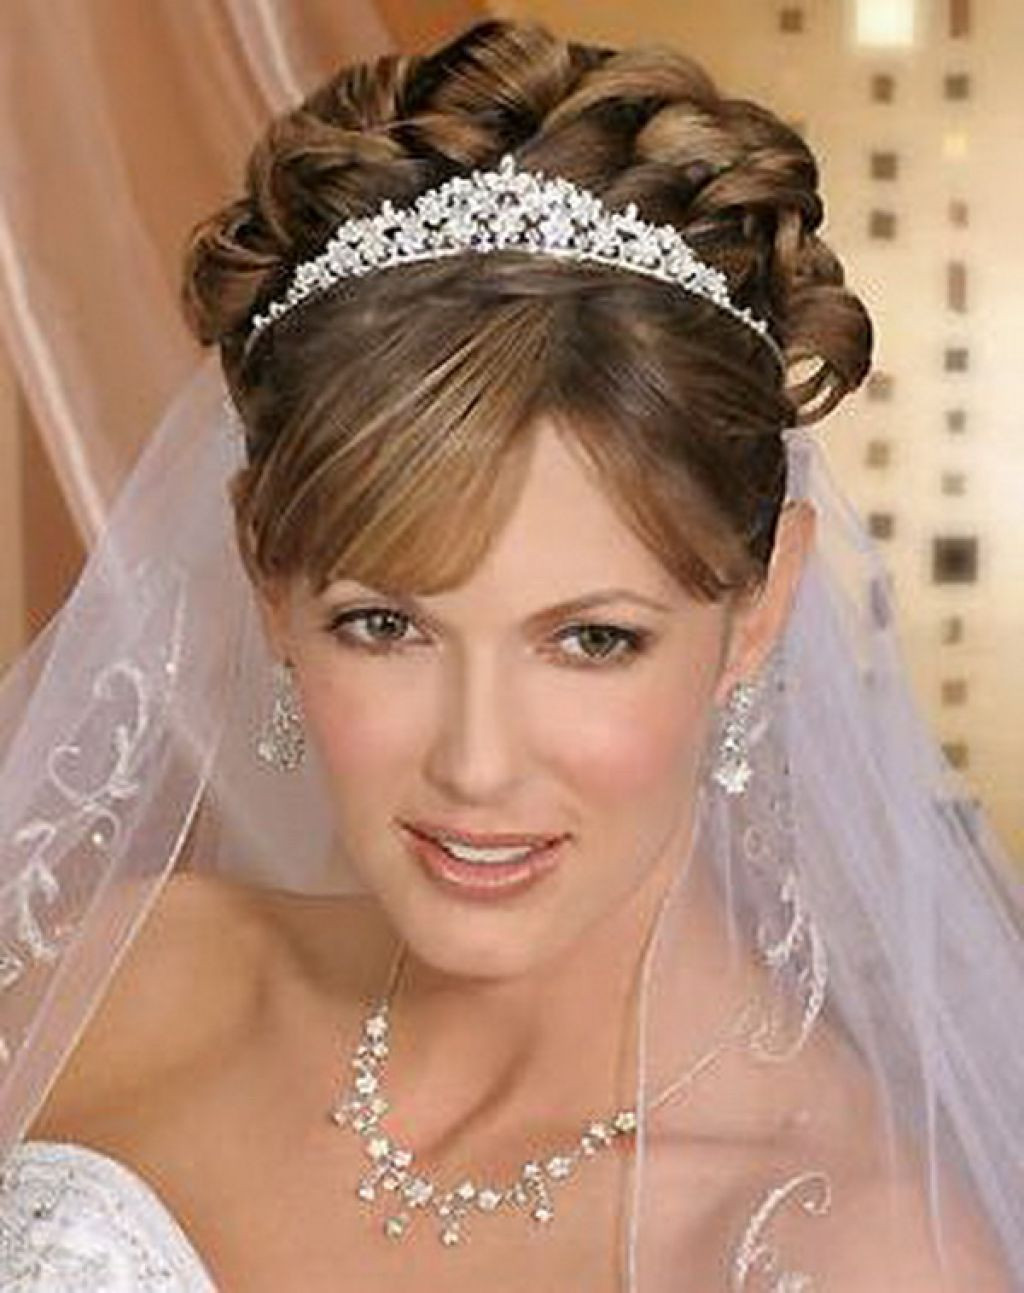 Wedding Hairstyles With Tiara
 Tiara Wedding Hairstyles Ideas for Brides HairzStyle